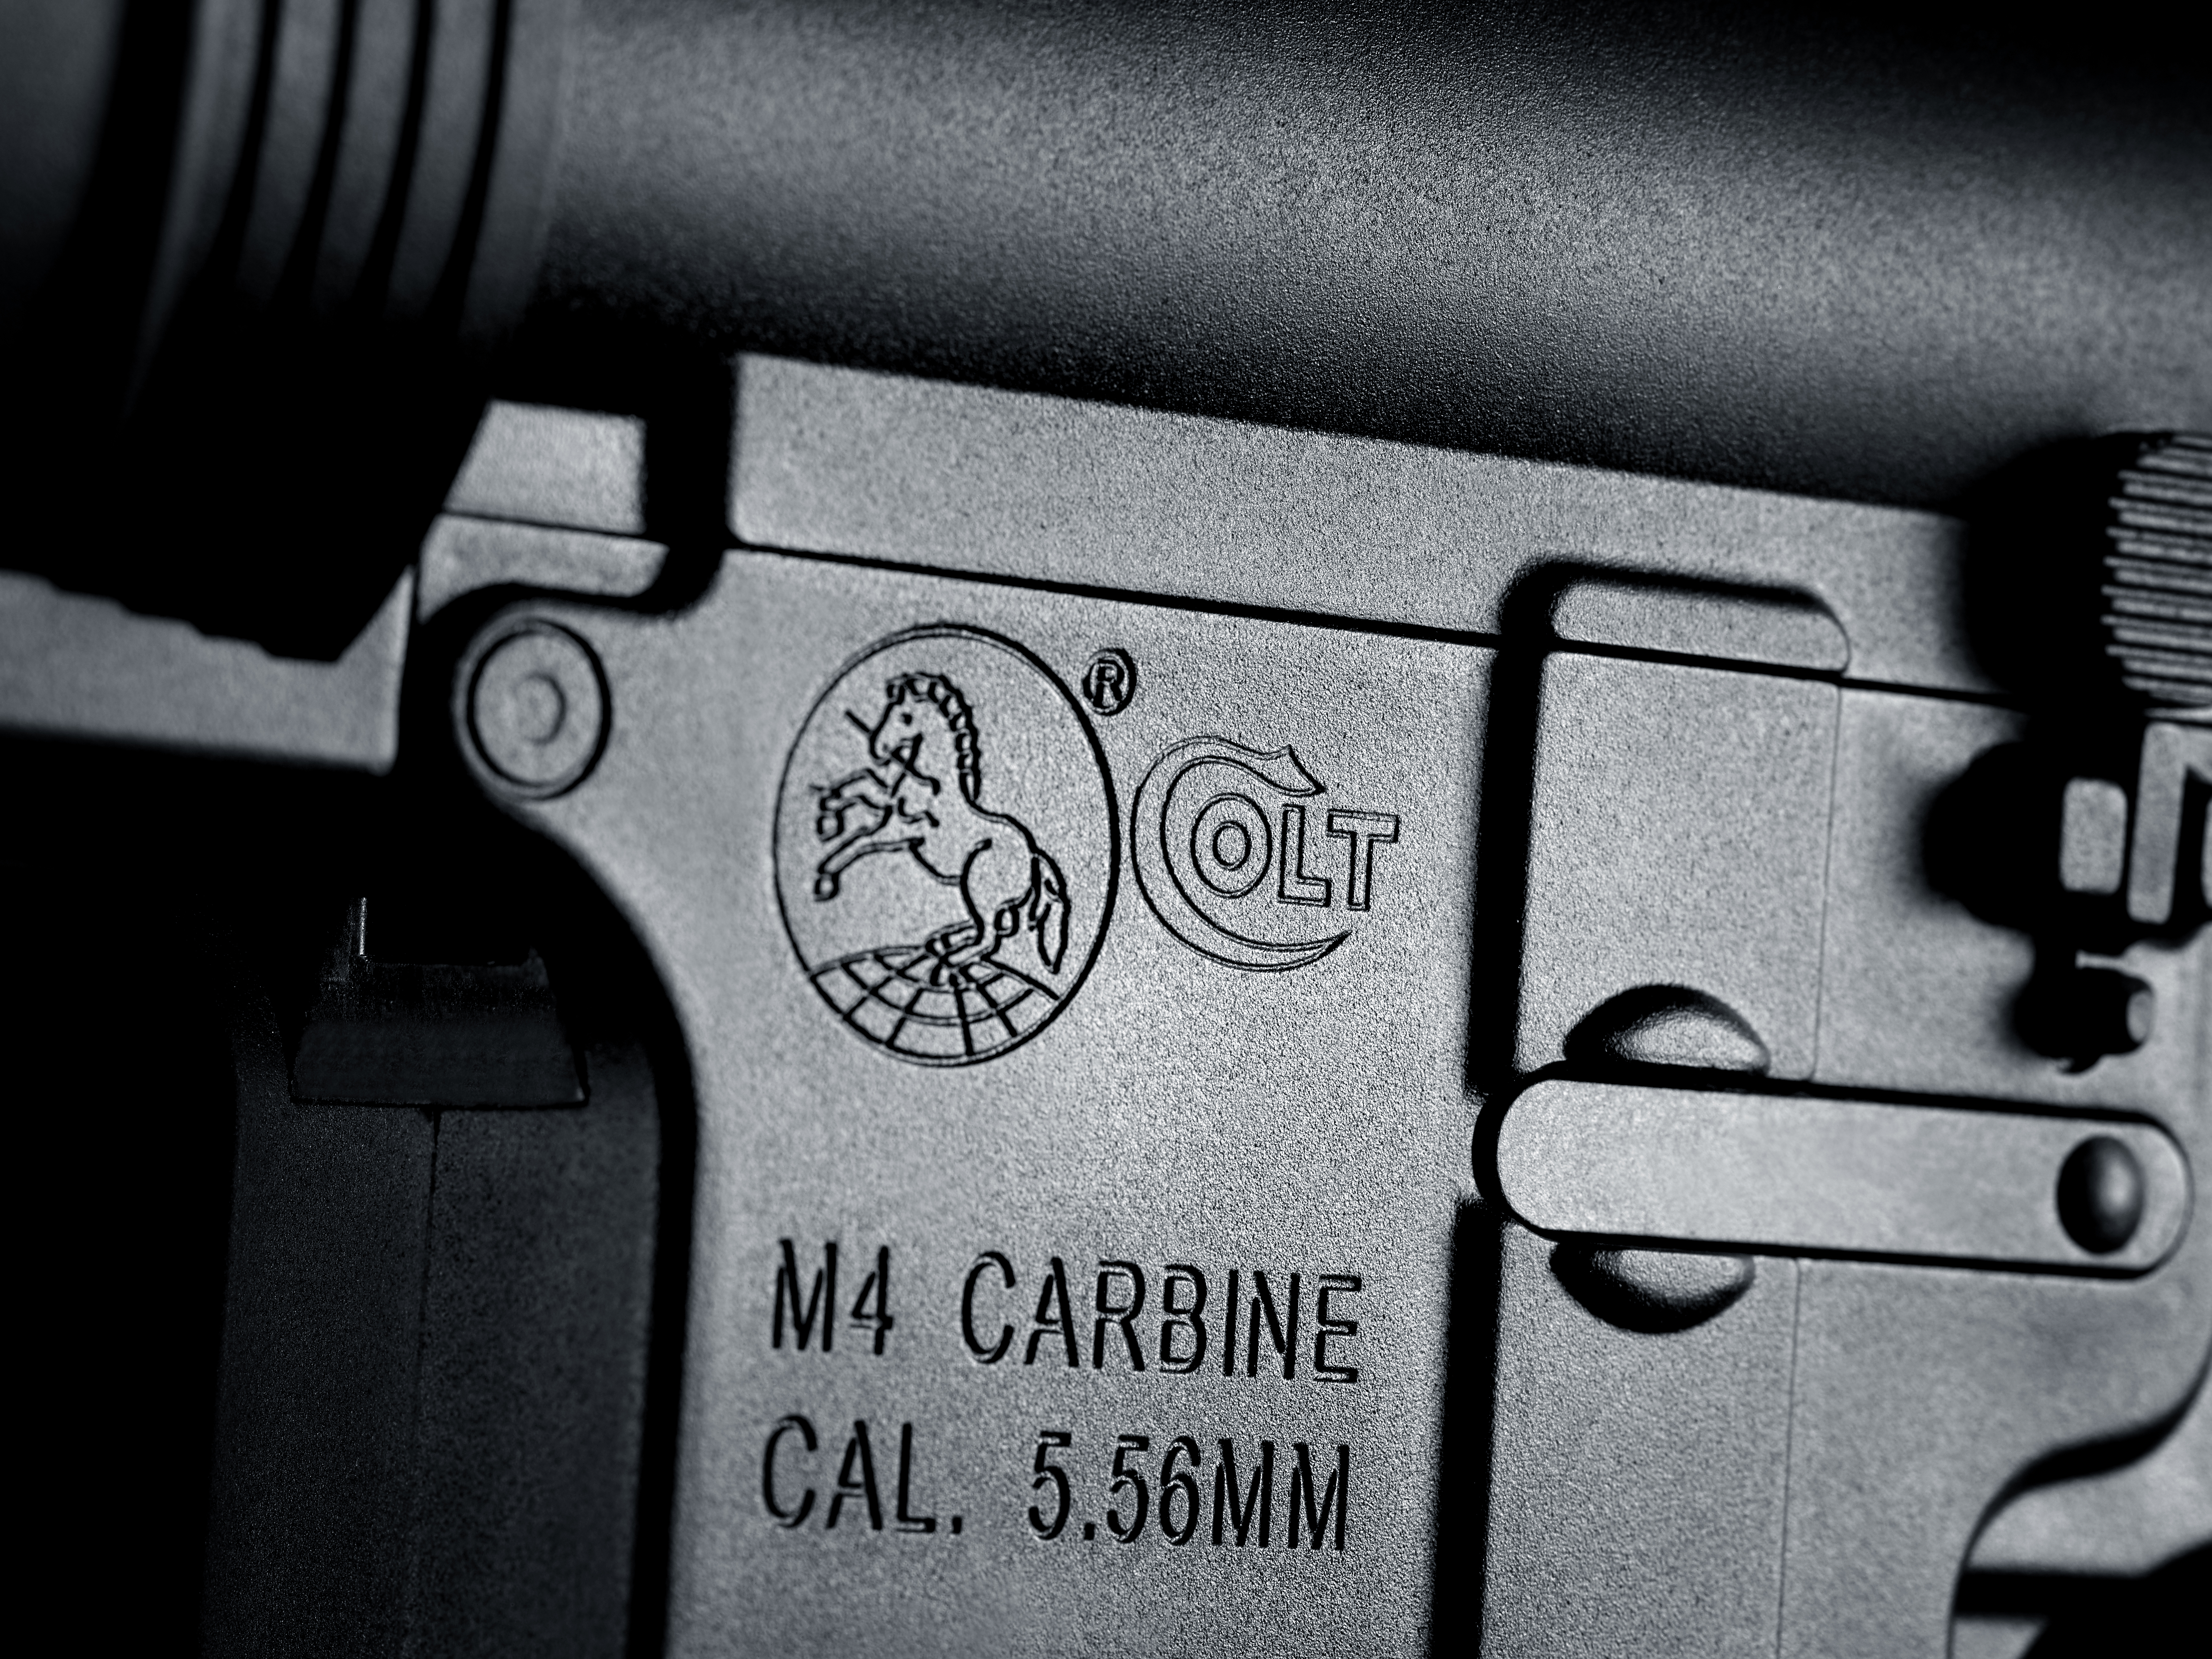 COLT (Umarex) Spring Operated Airgun Replica M4